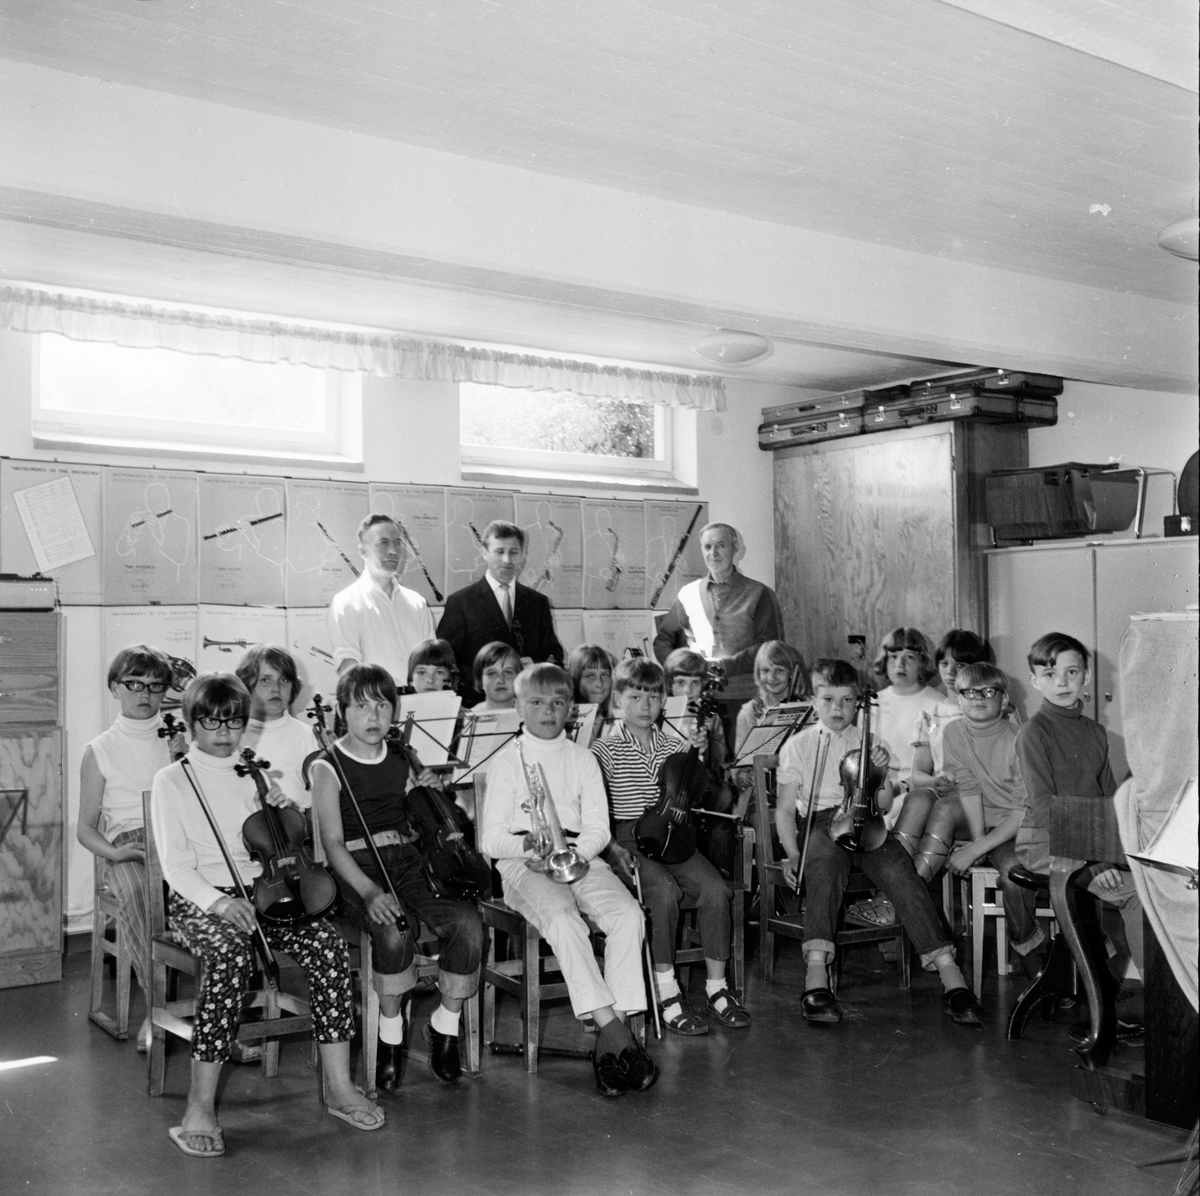 Arbrå. Musik-kurs för barn.
15/6-1967